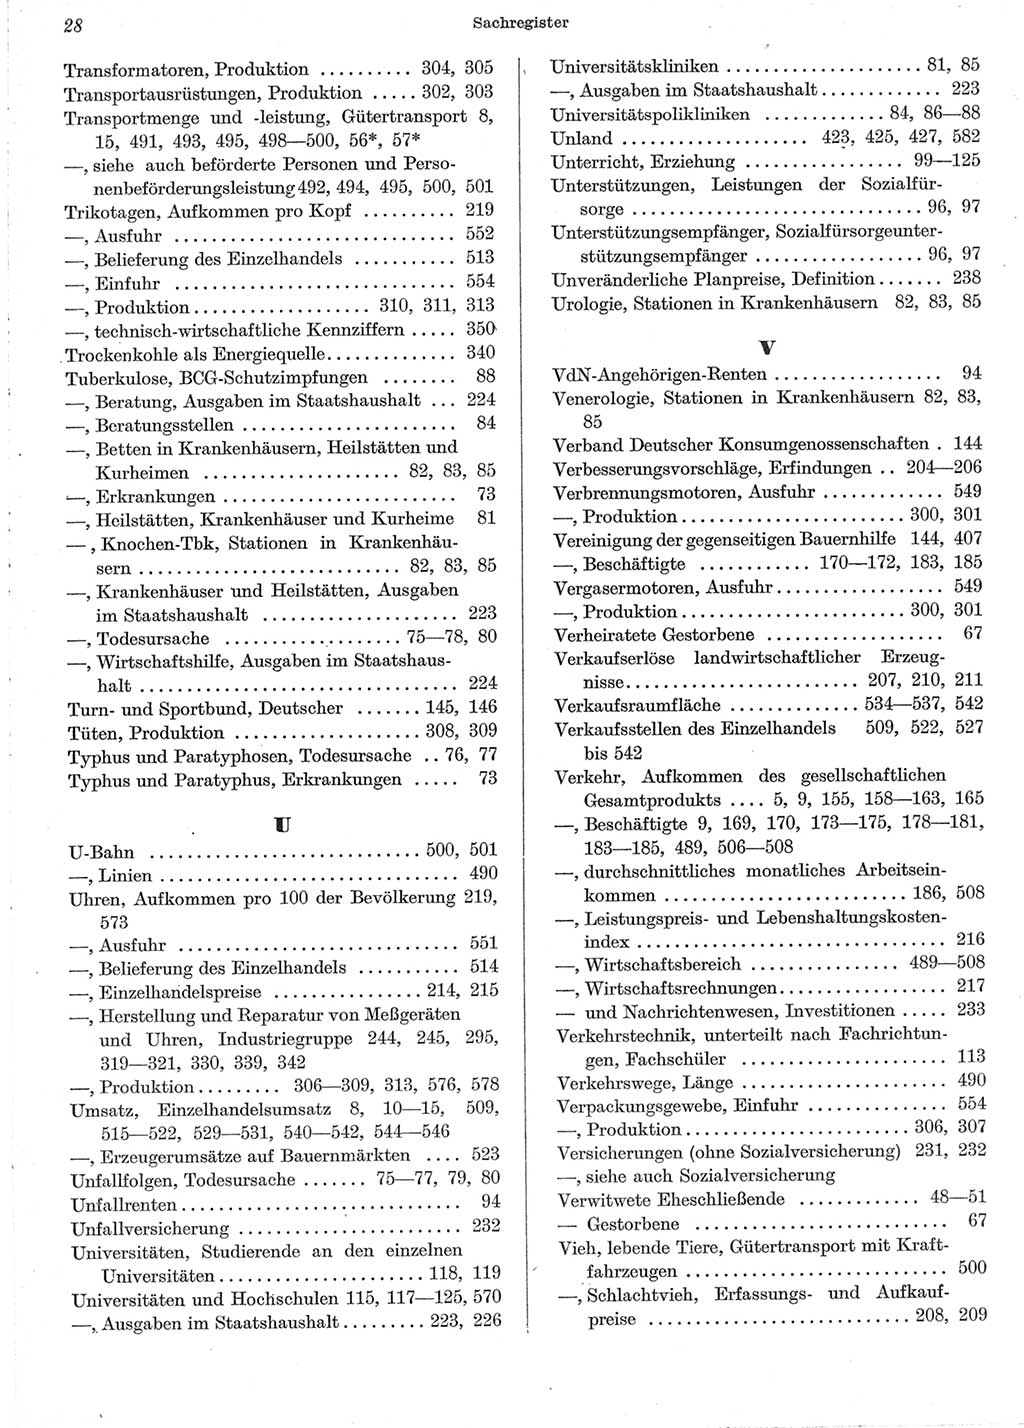 Statistisches Jahrbuch der Deutschen Demokratischen Republik (DDR) 1962, Seite 28 (Stat. Jb. DDR 1962, S. 28)